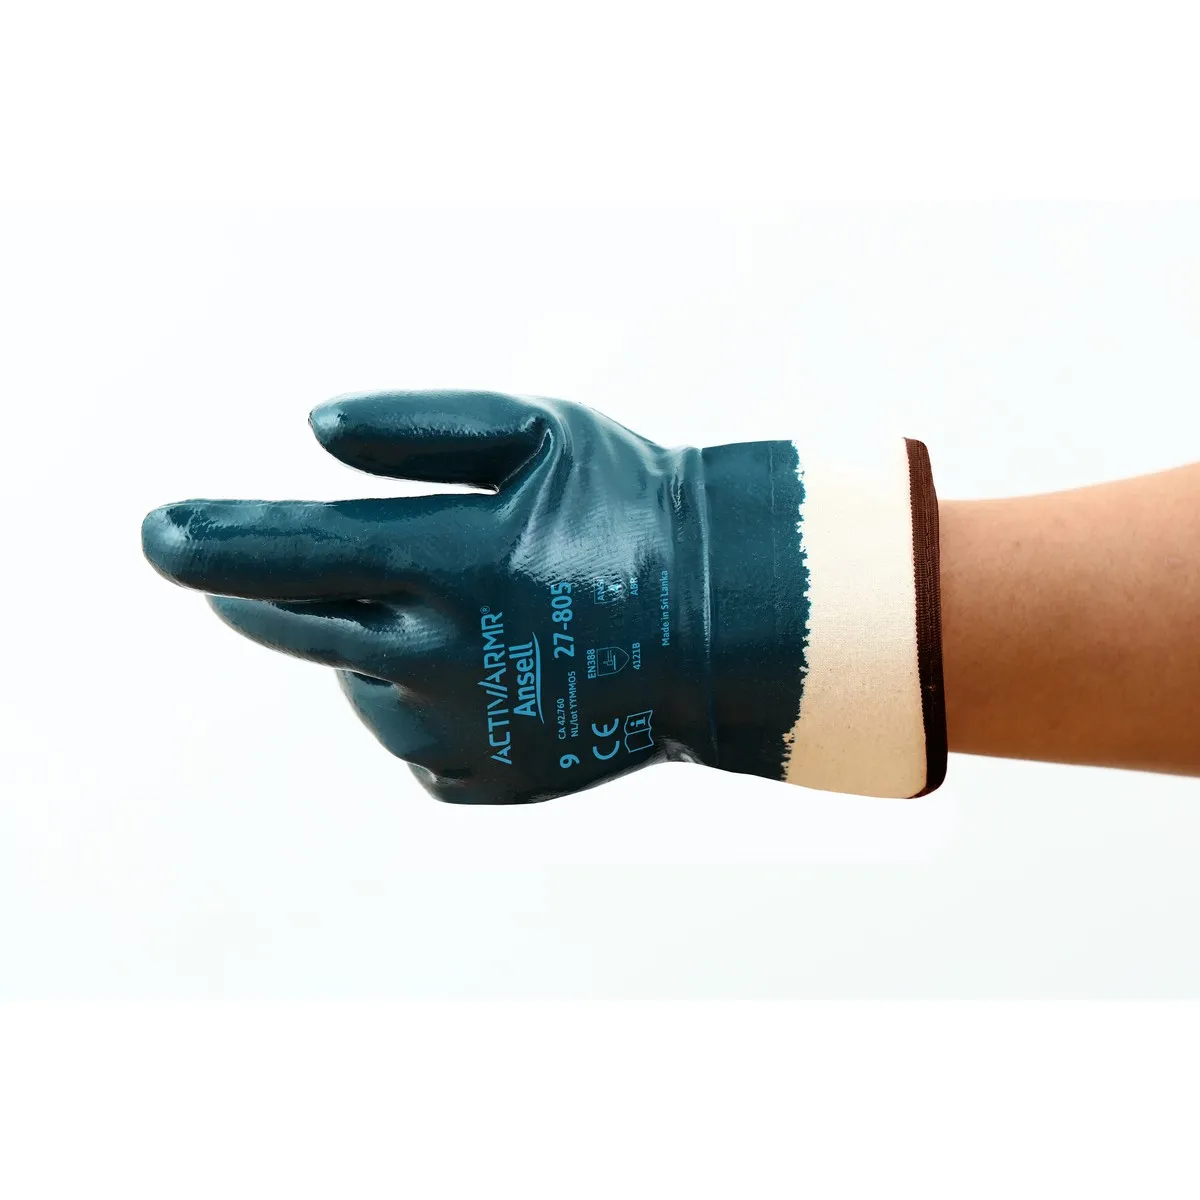 Zaštitne rukavice HYCRON 27-805 belo-plave - Ansell - PAR 